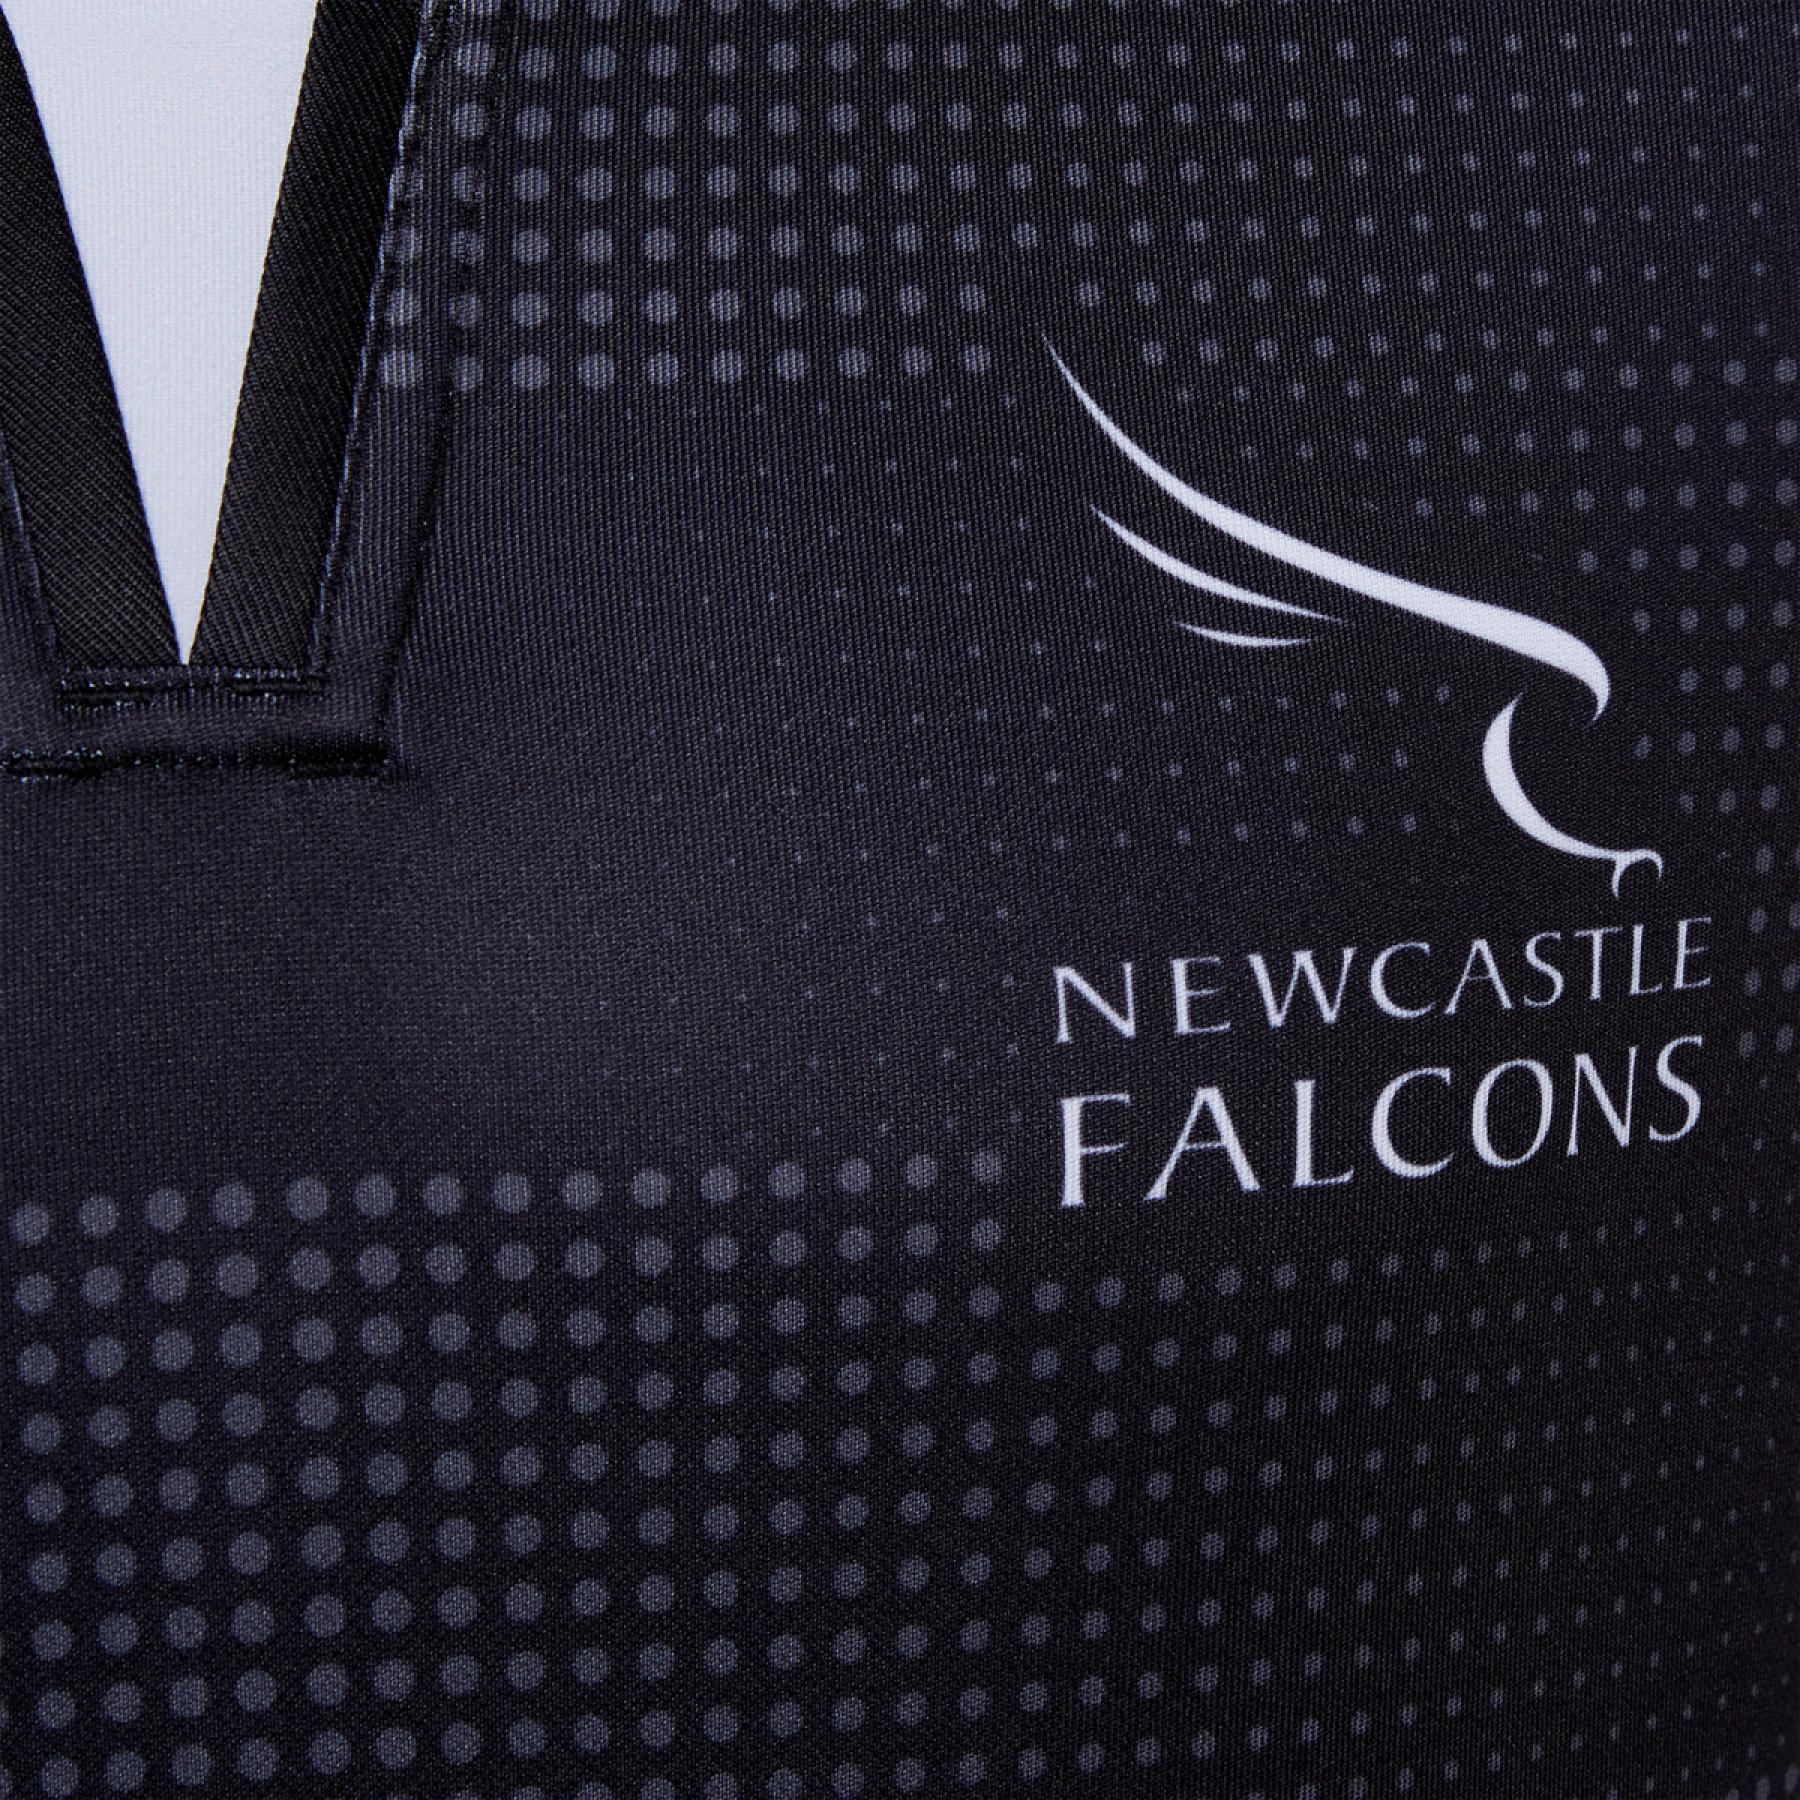 Maglia per la casa Newcastle falcons 2020/21